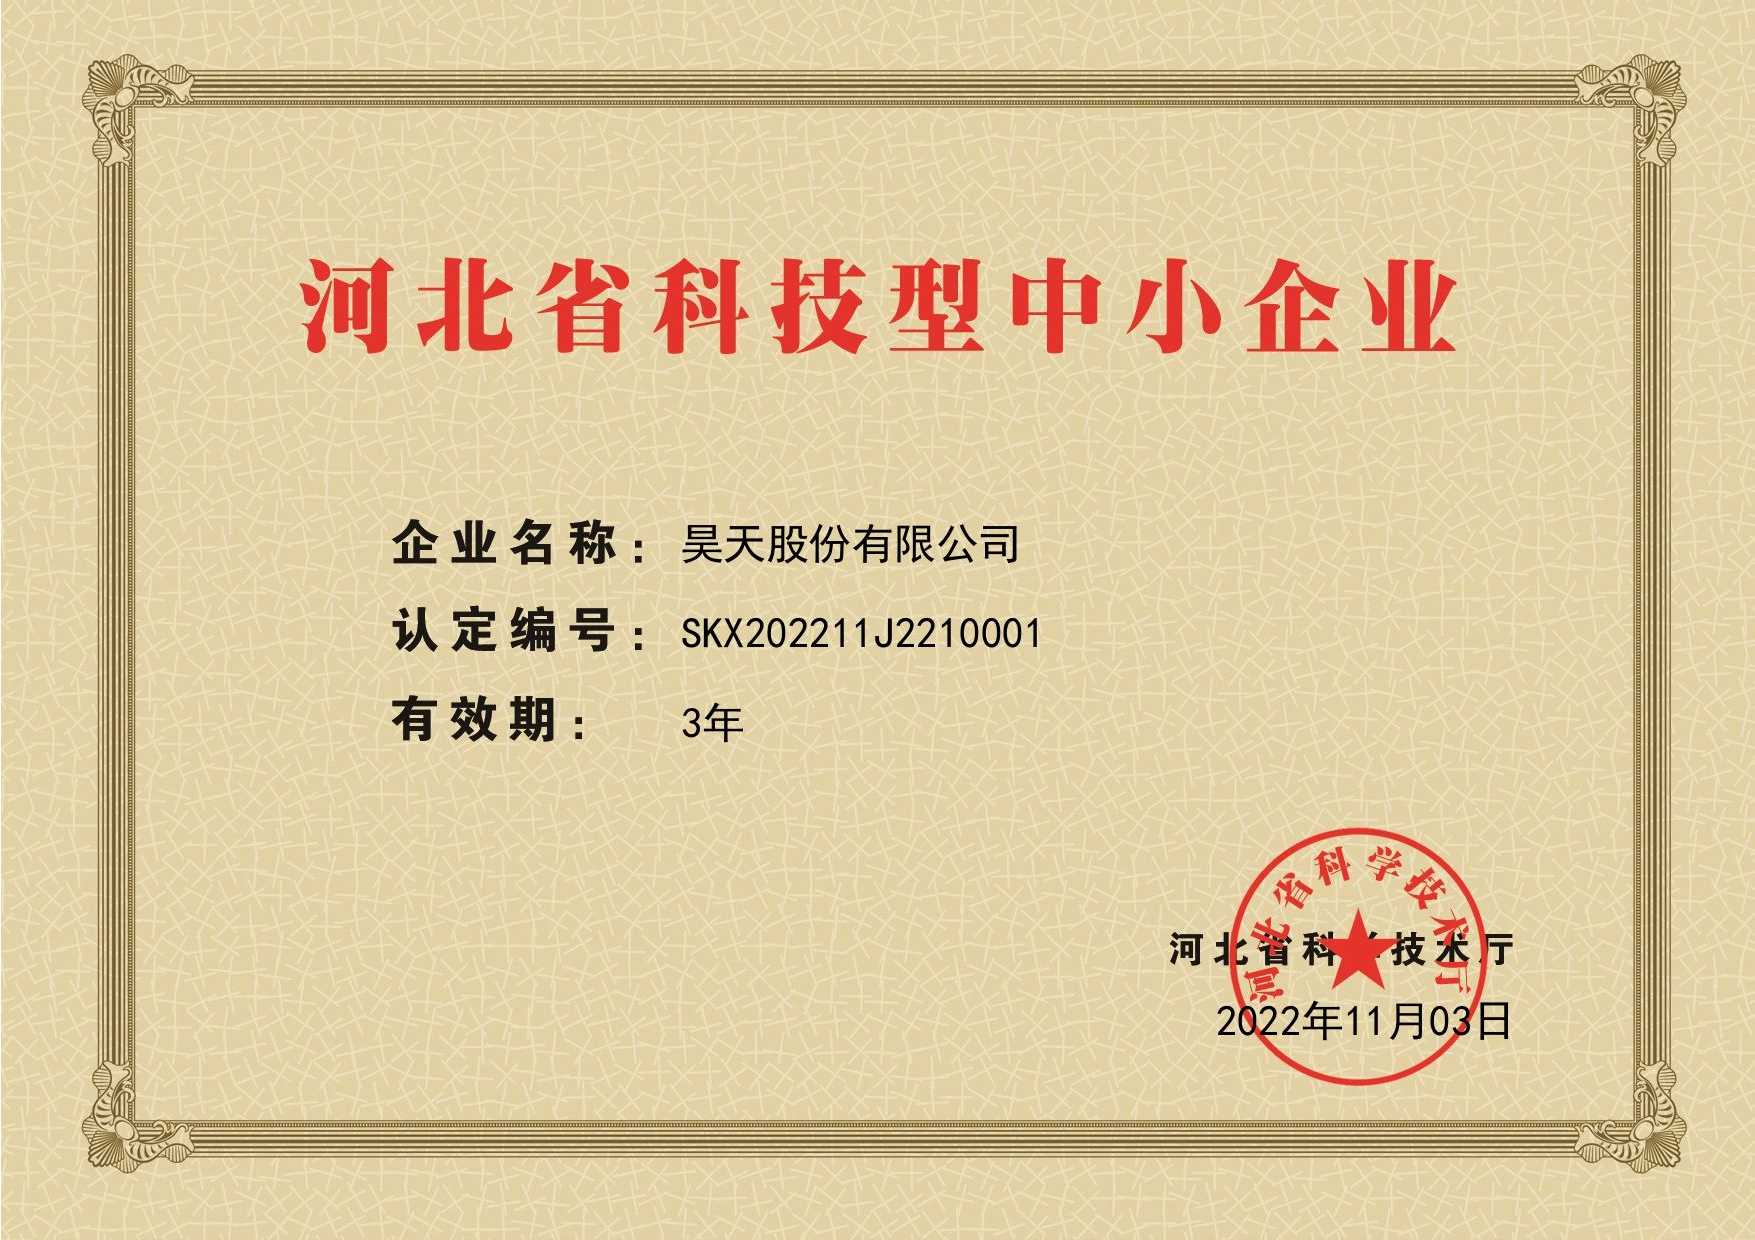 河北省科技型中小企业证书